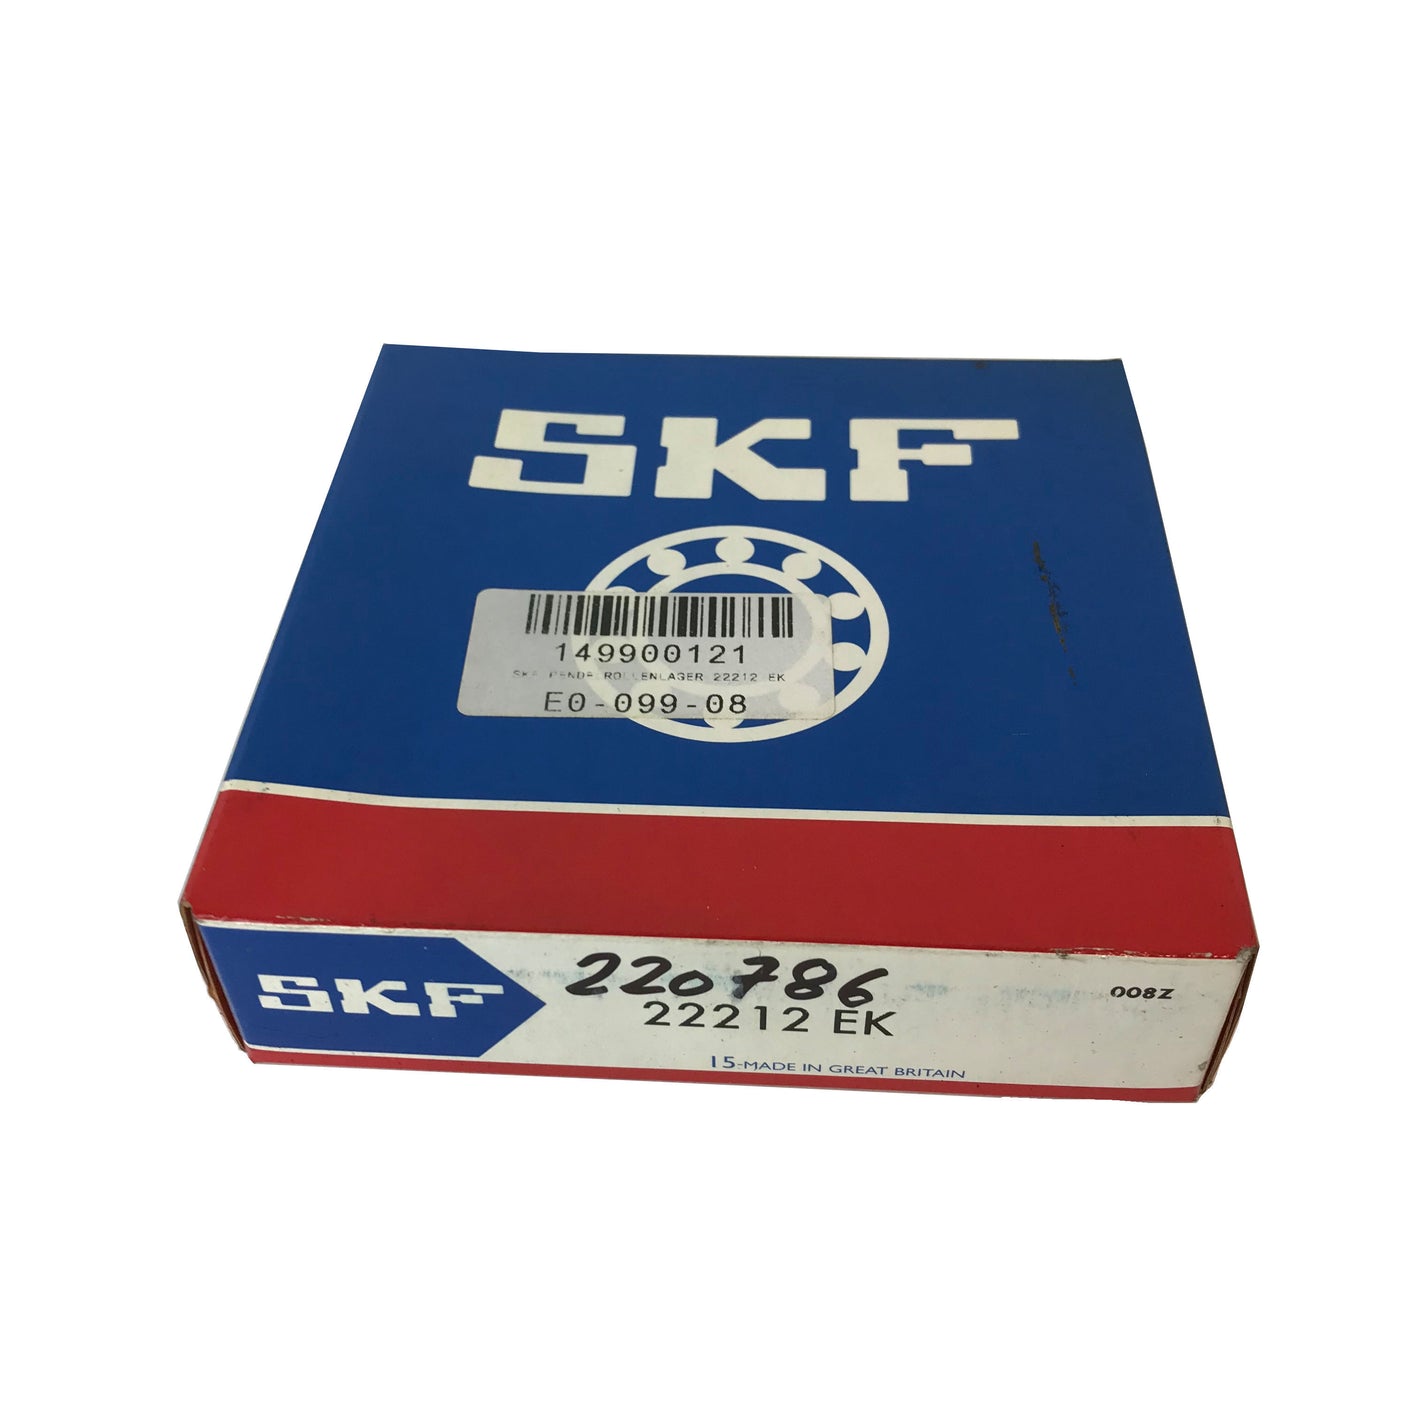 SKF 22212 EK 60x110x28mm spherical roller bearing